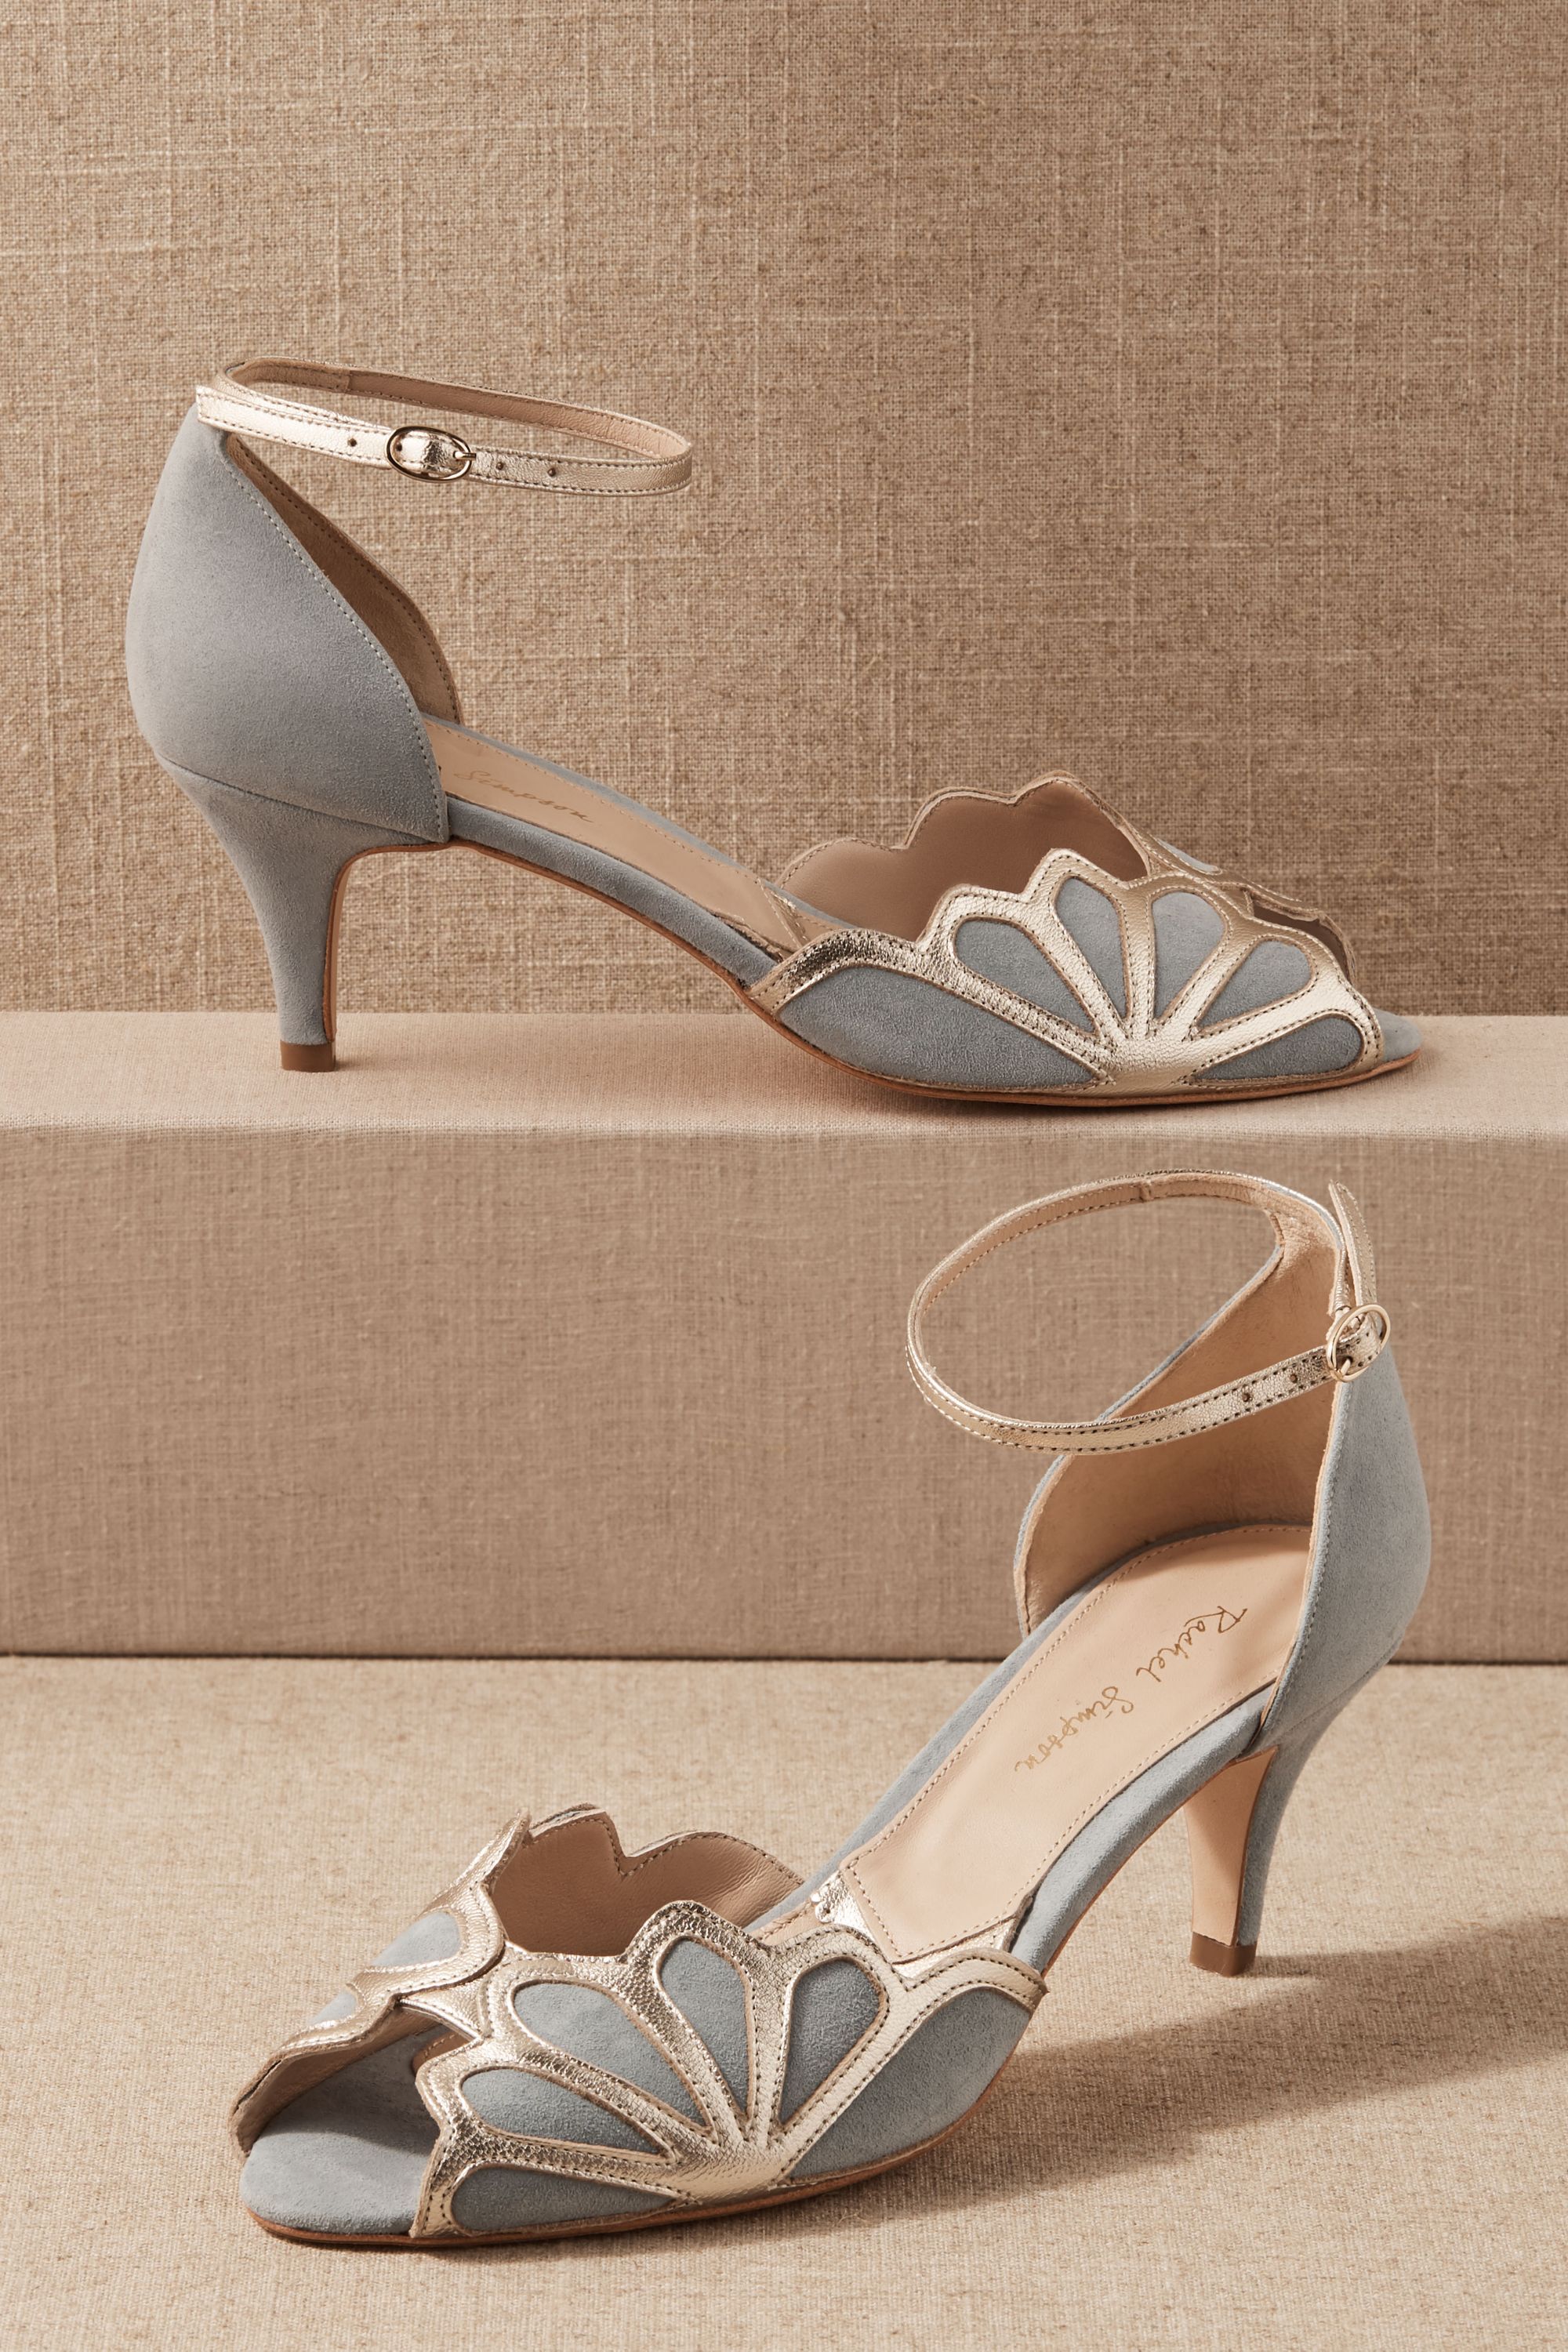 vintage inspired heels